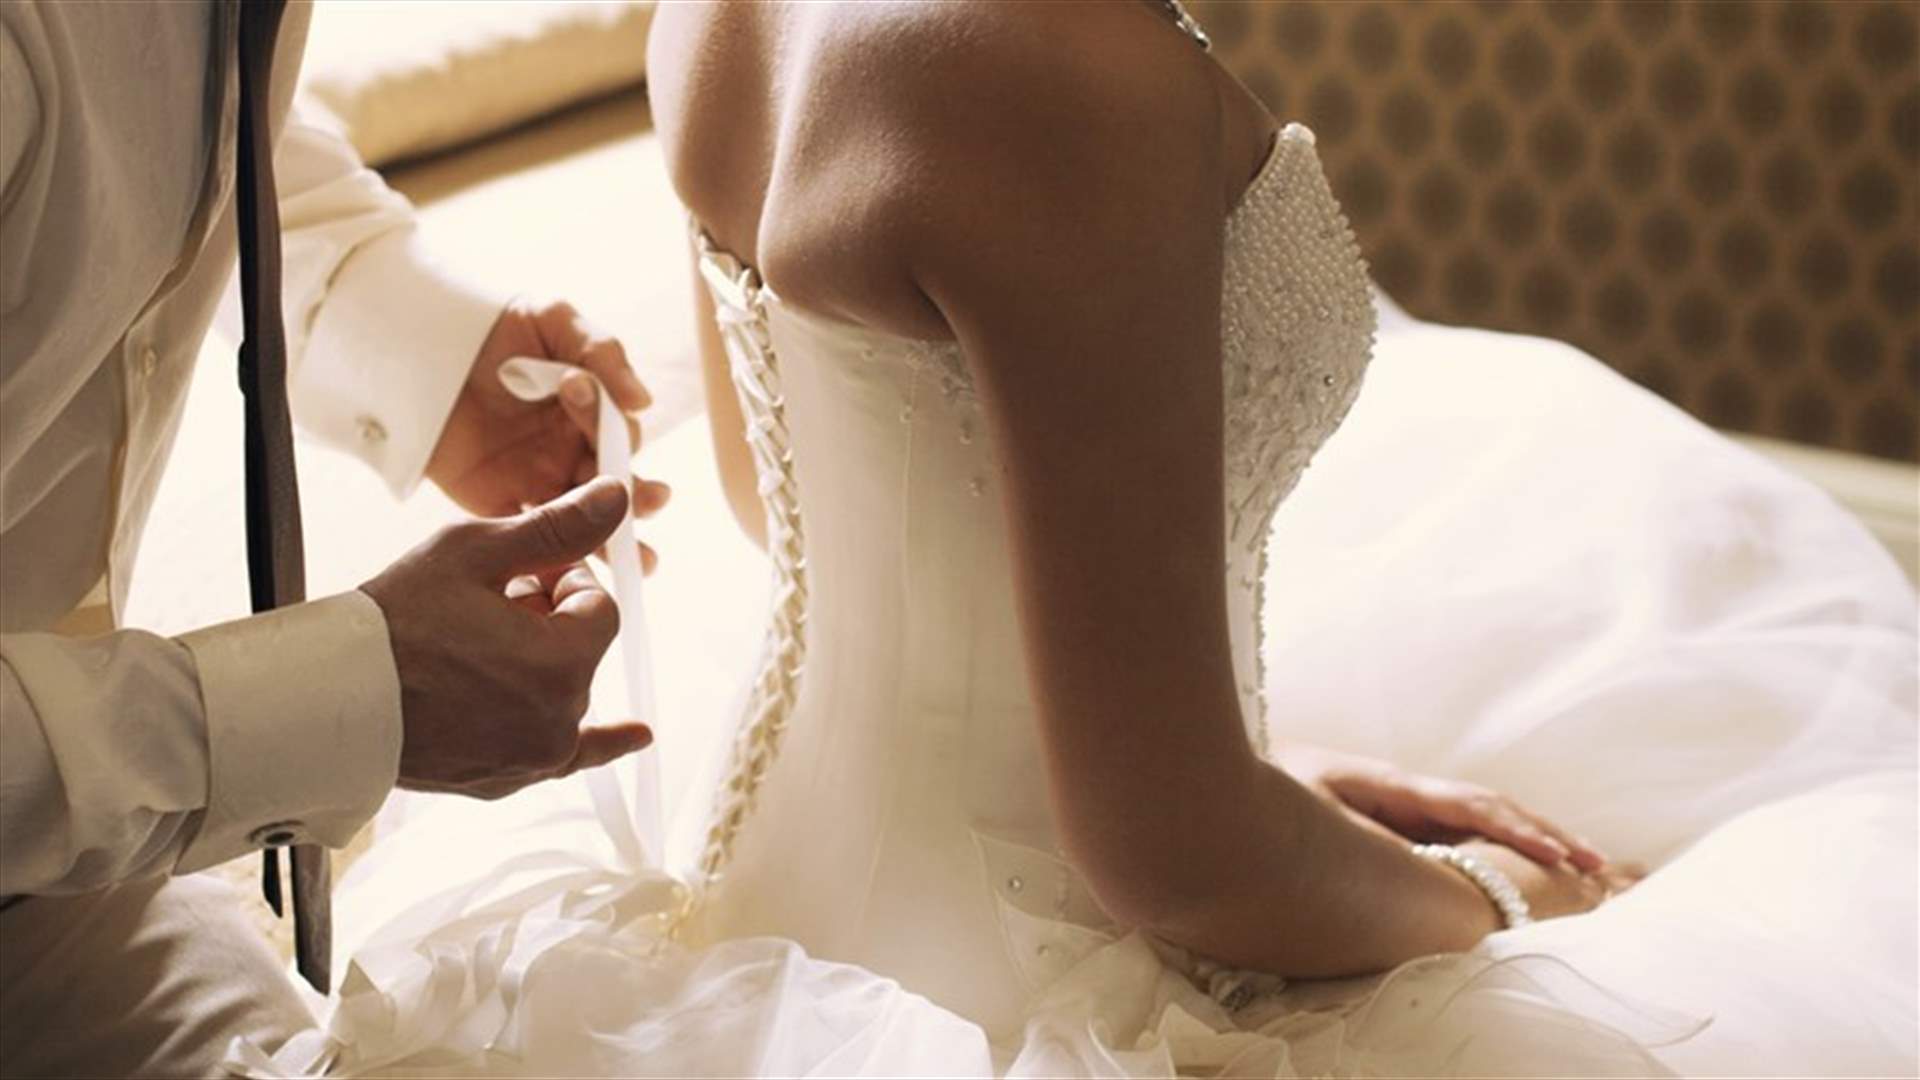 أسباب تمنع الثنائي من ممارسة الجنس ليلة زفافهما